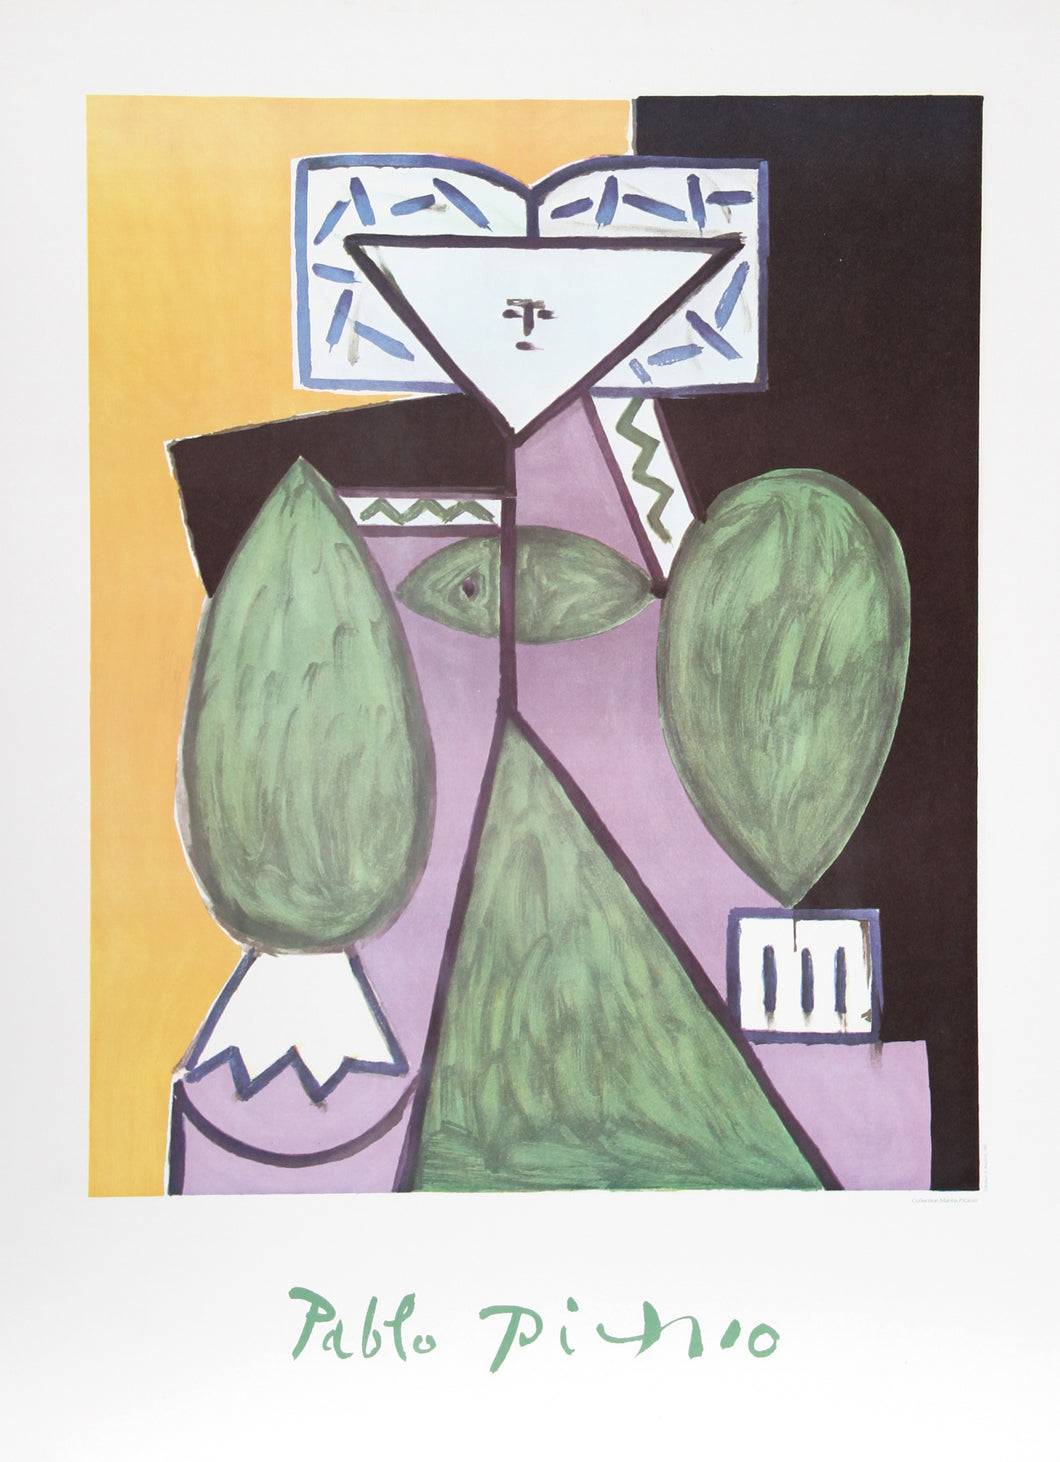 Pablo Picasso, Femme en Vert et Mauve, Lithograph